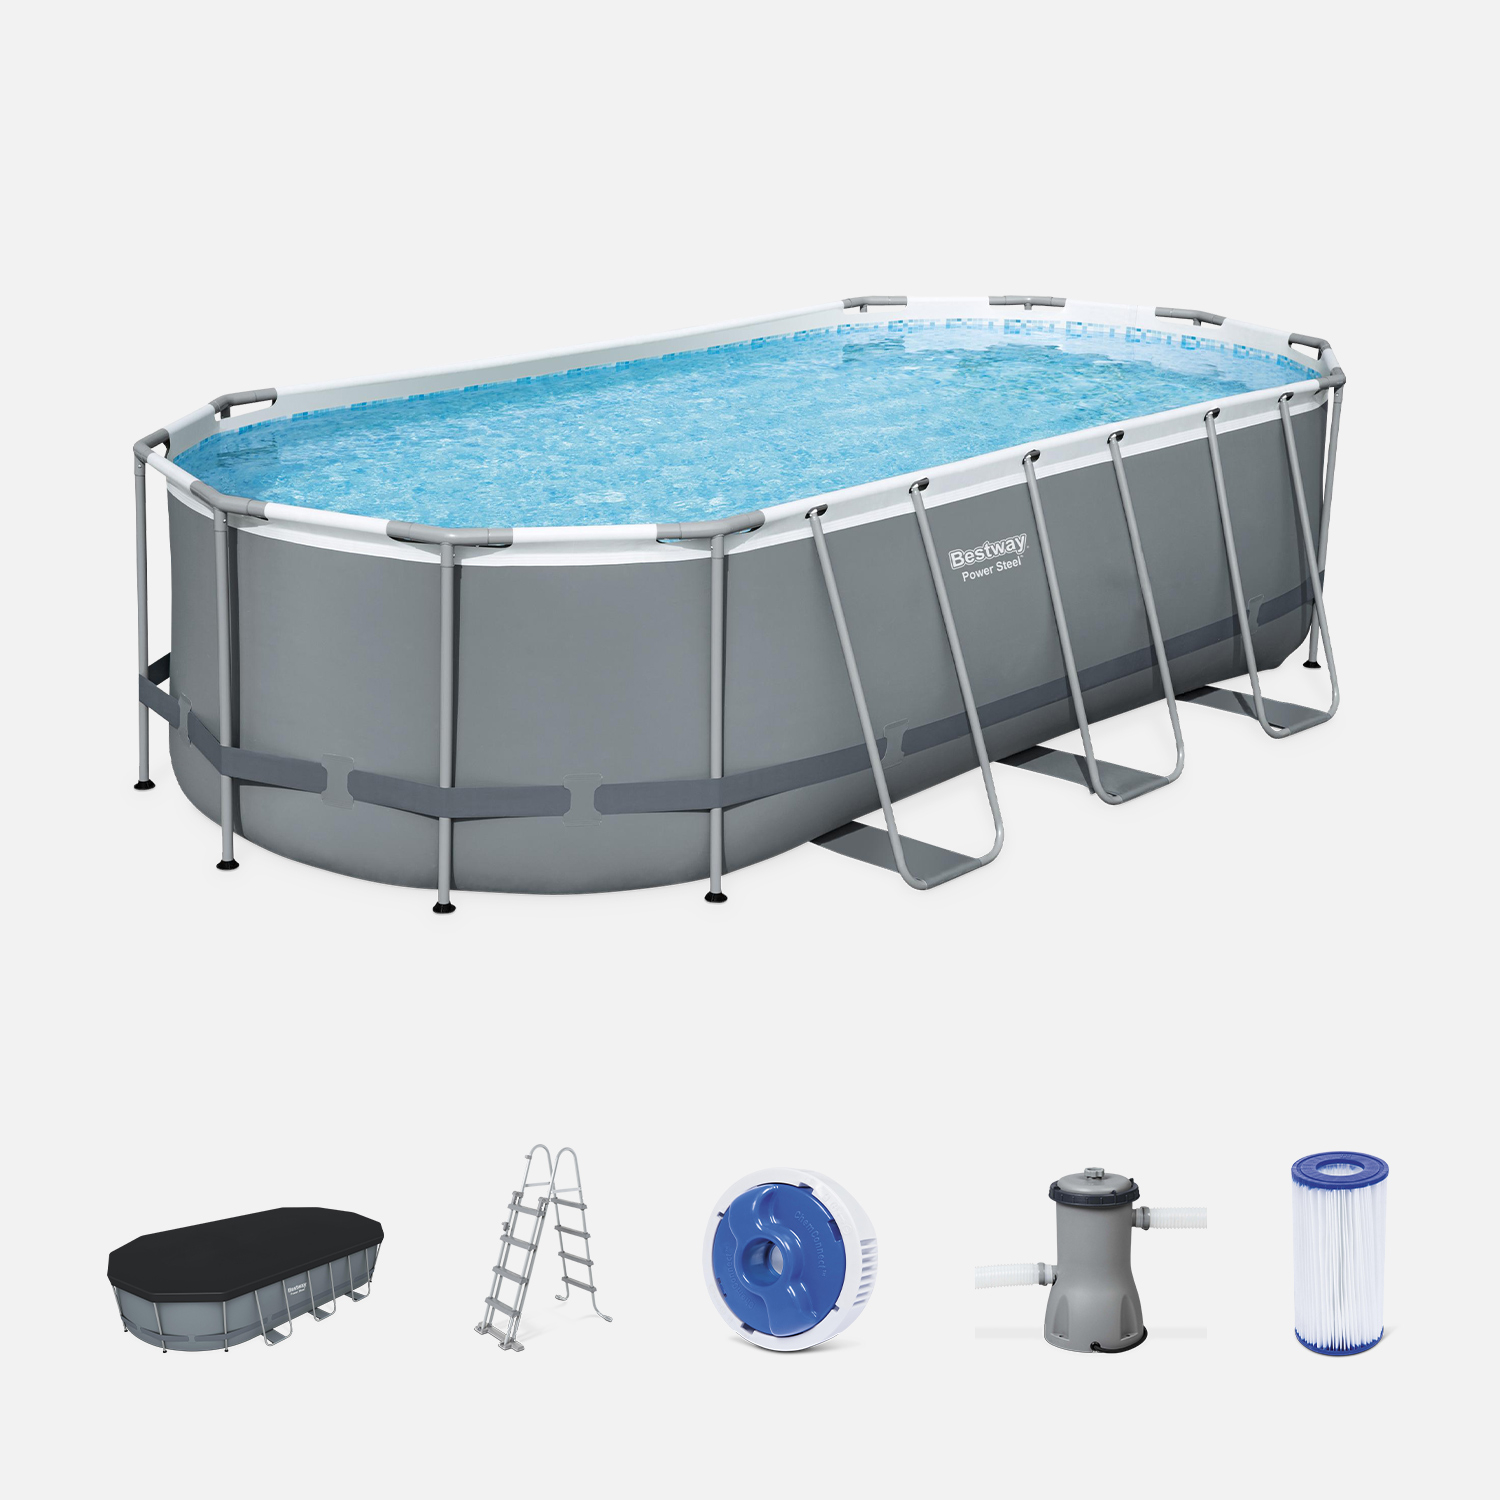 Kit piscine complet bestway – spinelle grise – piscine ovale tubulaire 5x3 m. Pompe de filtration. Échelle. Bâche de protection.